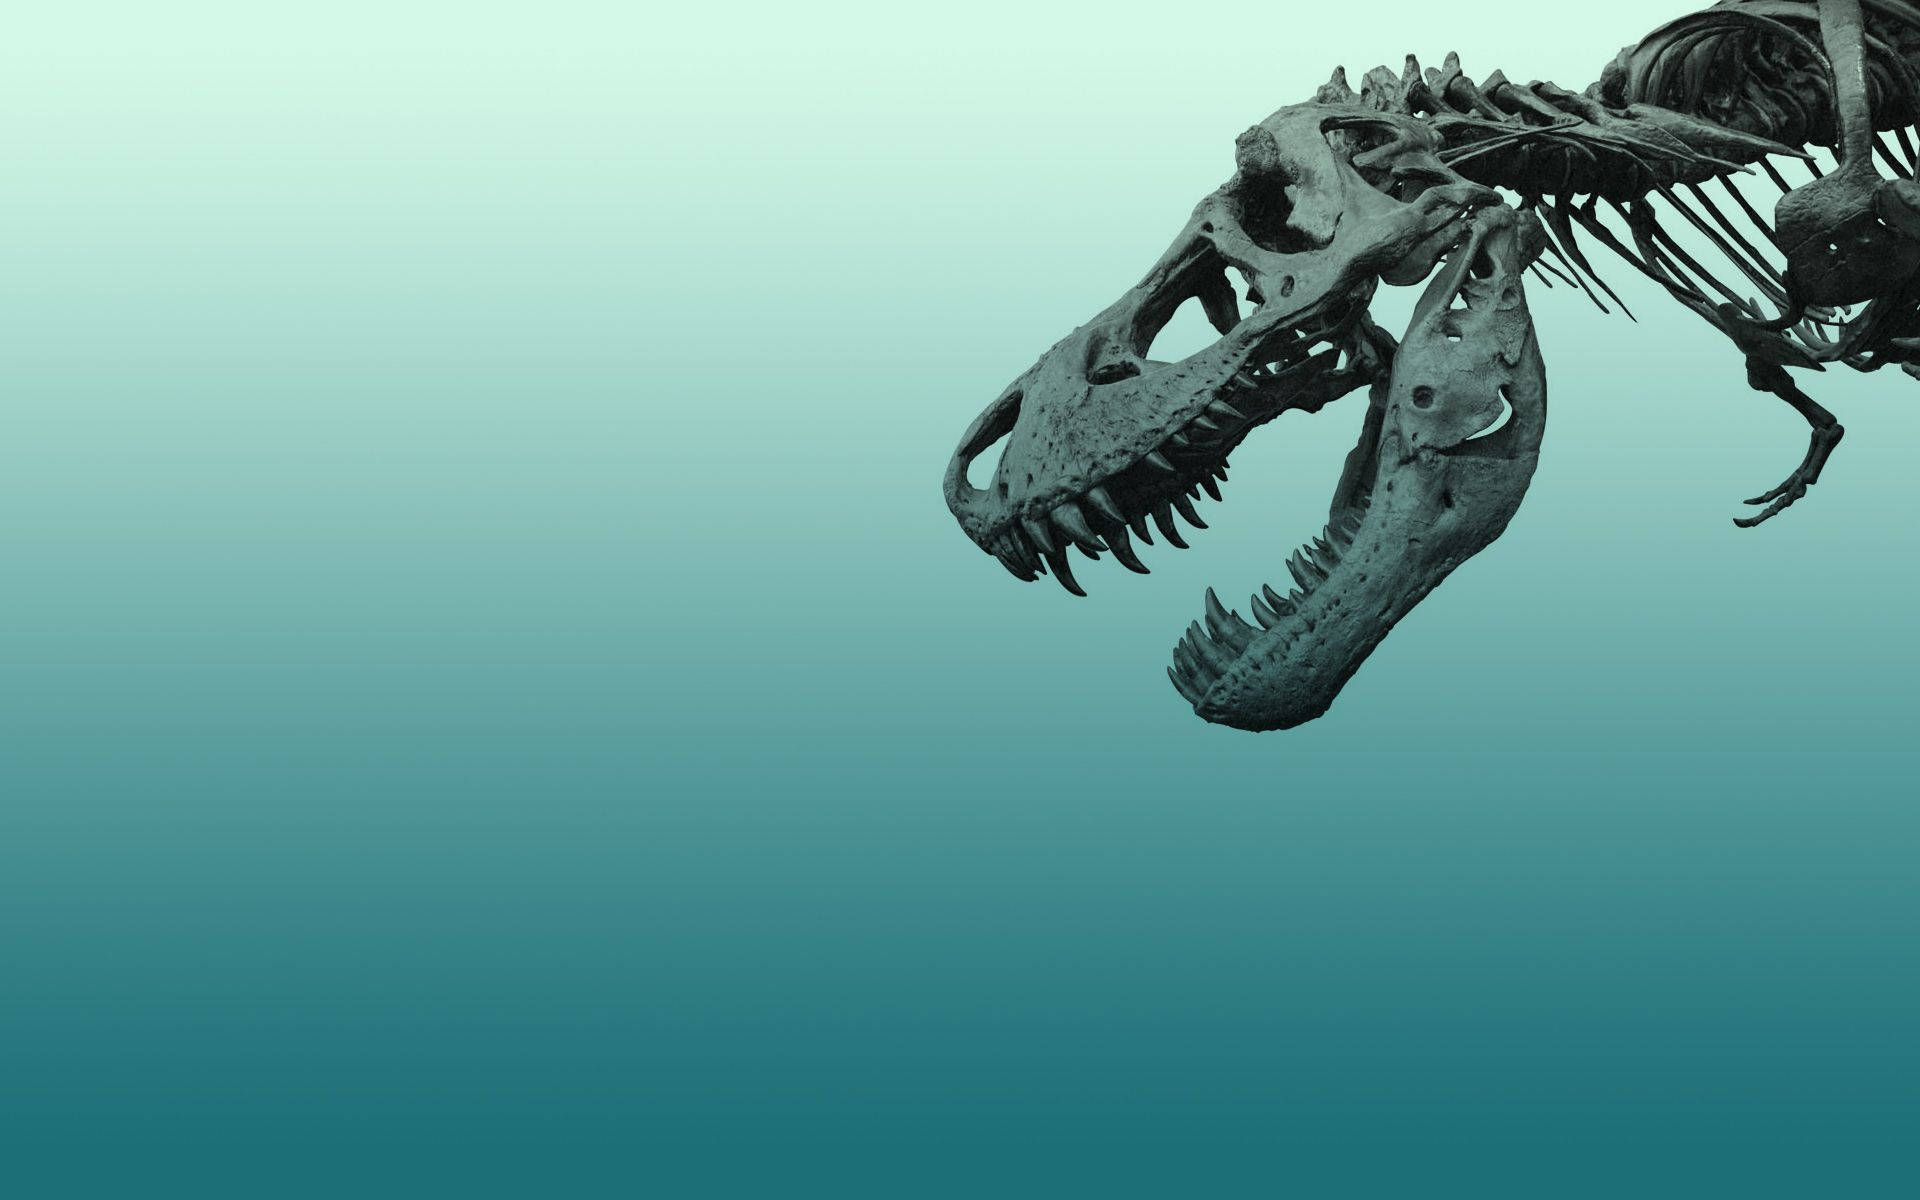 Skeletal Aesthetic of Blue Dinosaurs Wallpaper